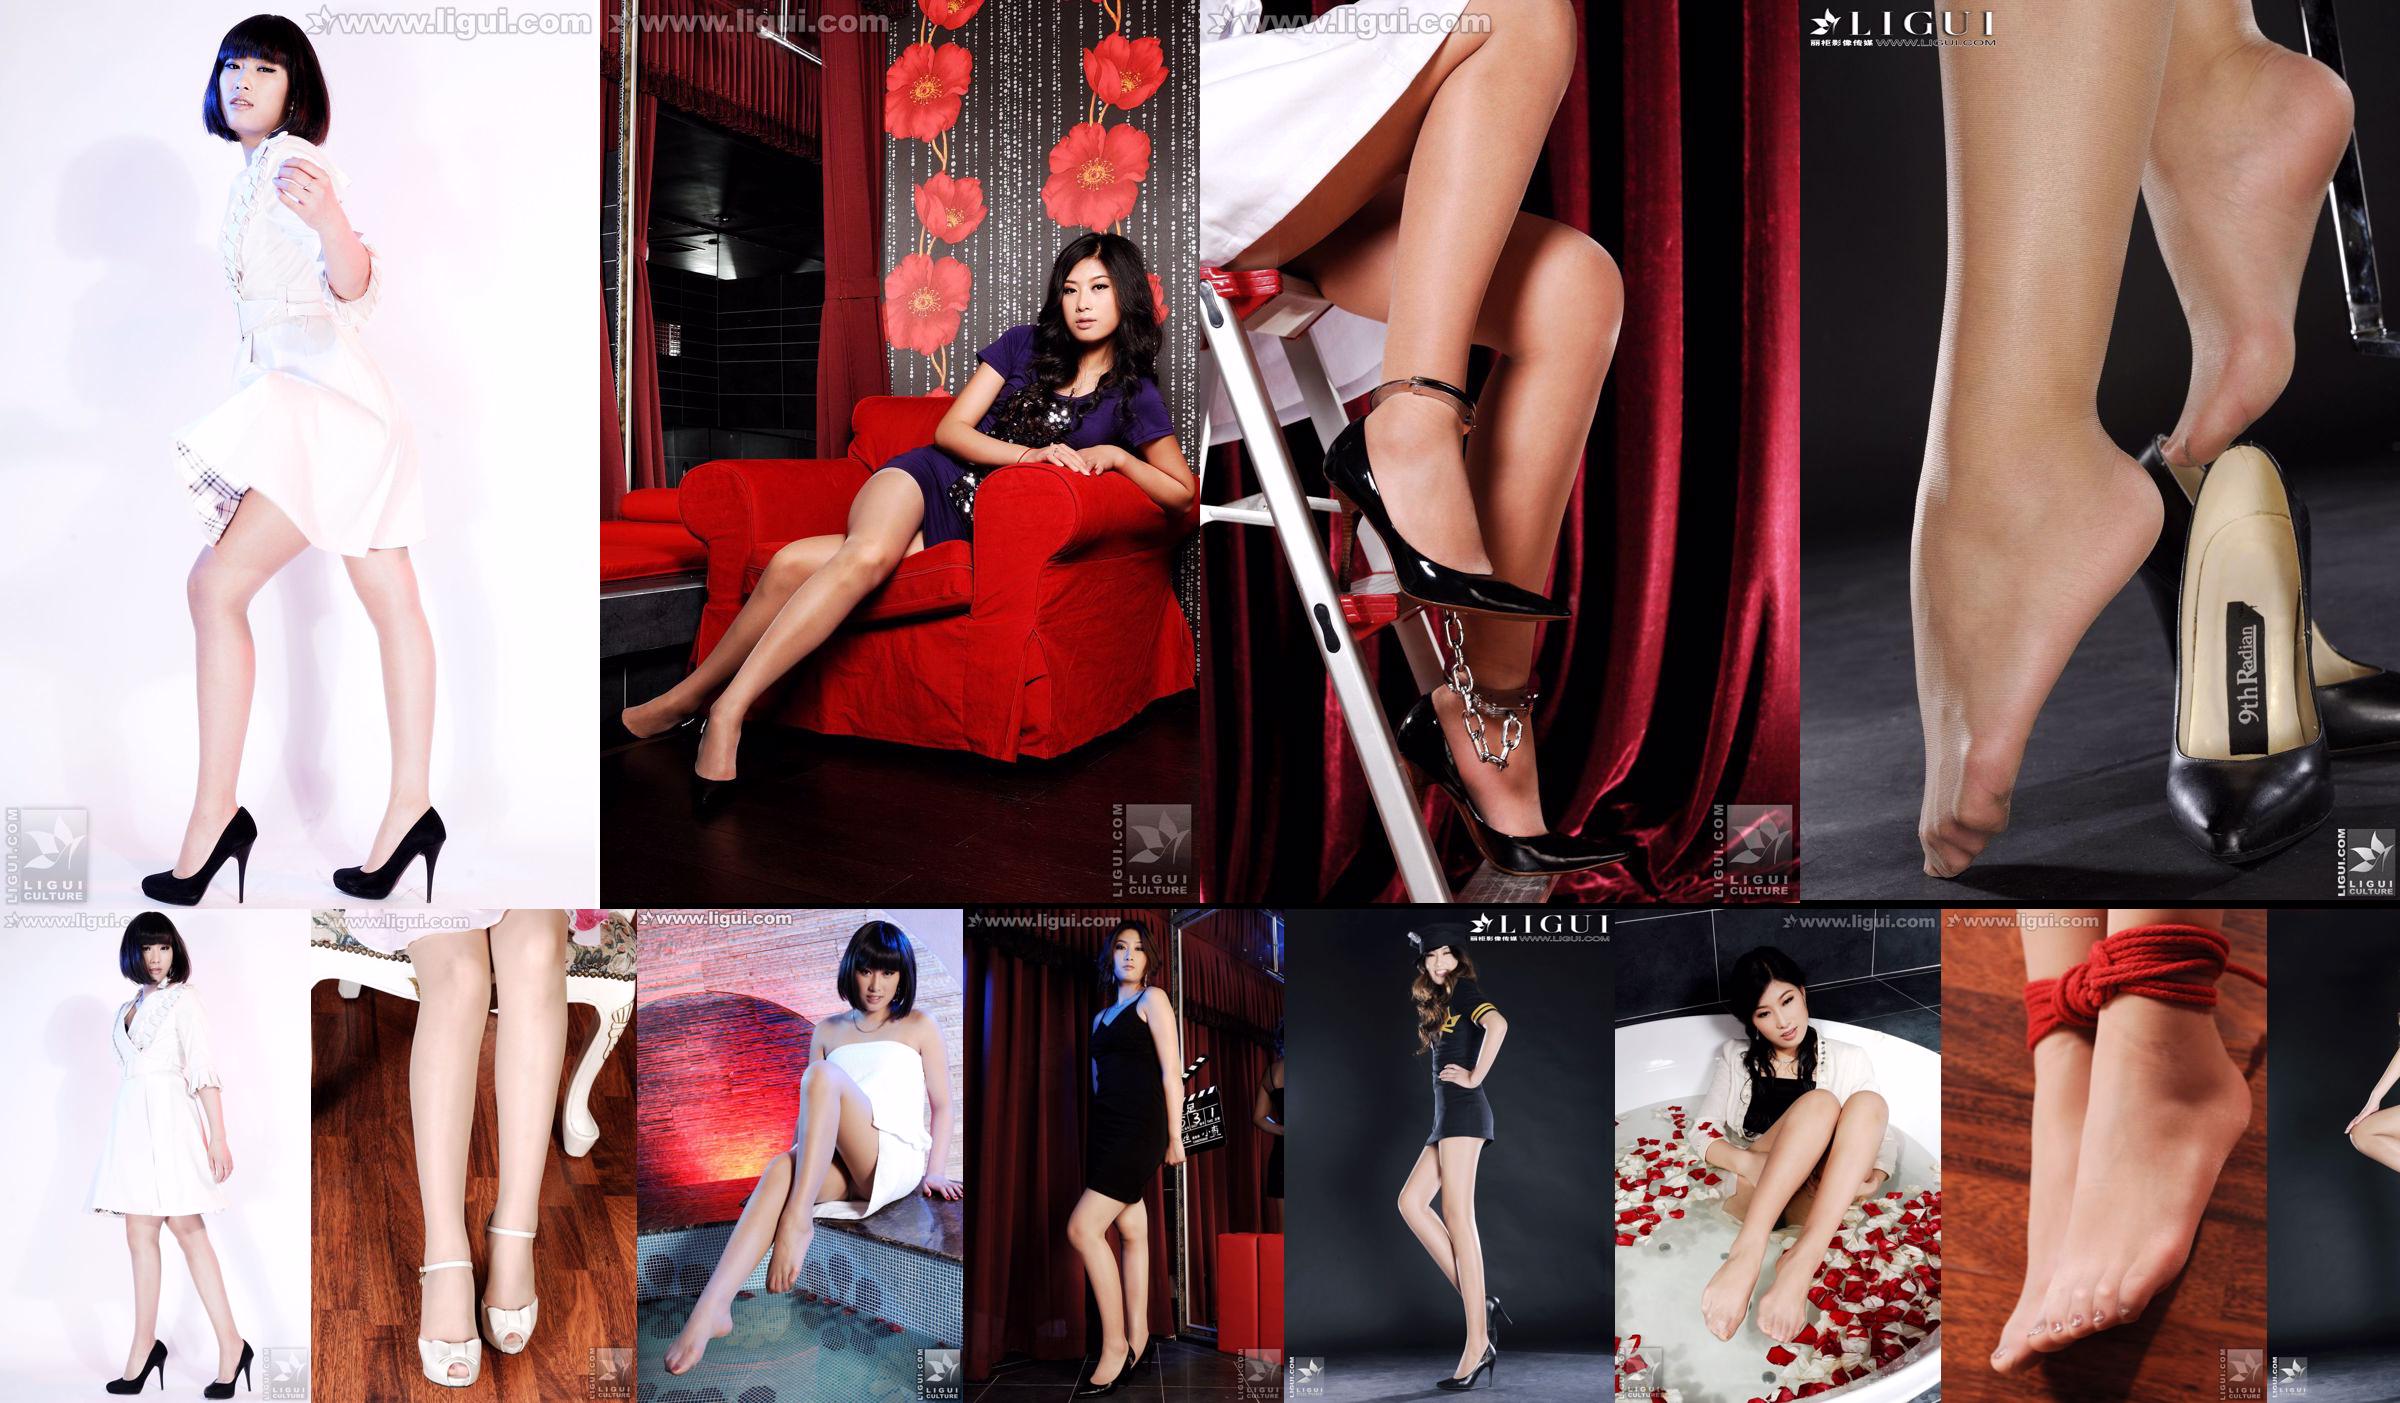 [丽柜LiGui] Model Siyu "New Couple Shows Graceful Silk Legs" Beautiful Legs and Jade Foot Photo Picture No.f88e2d Page 1